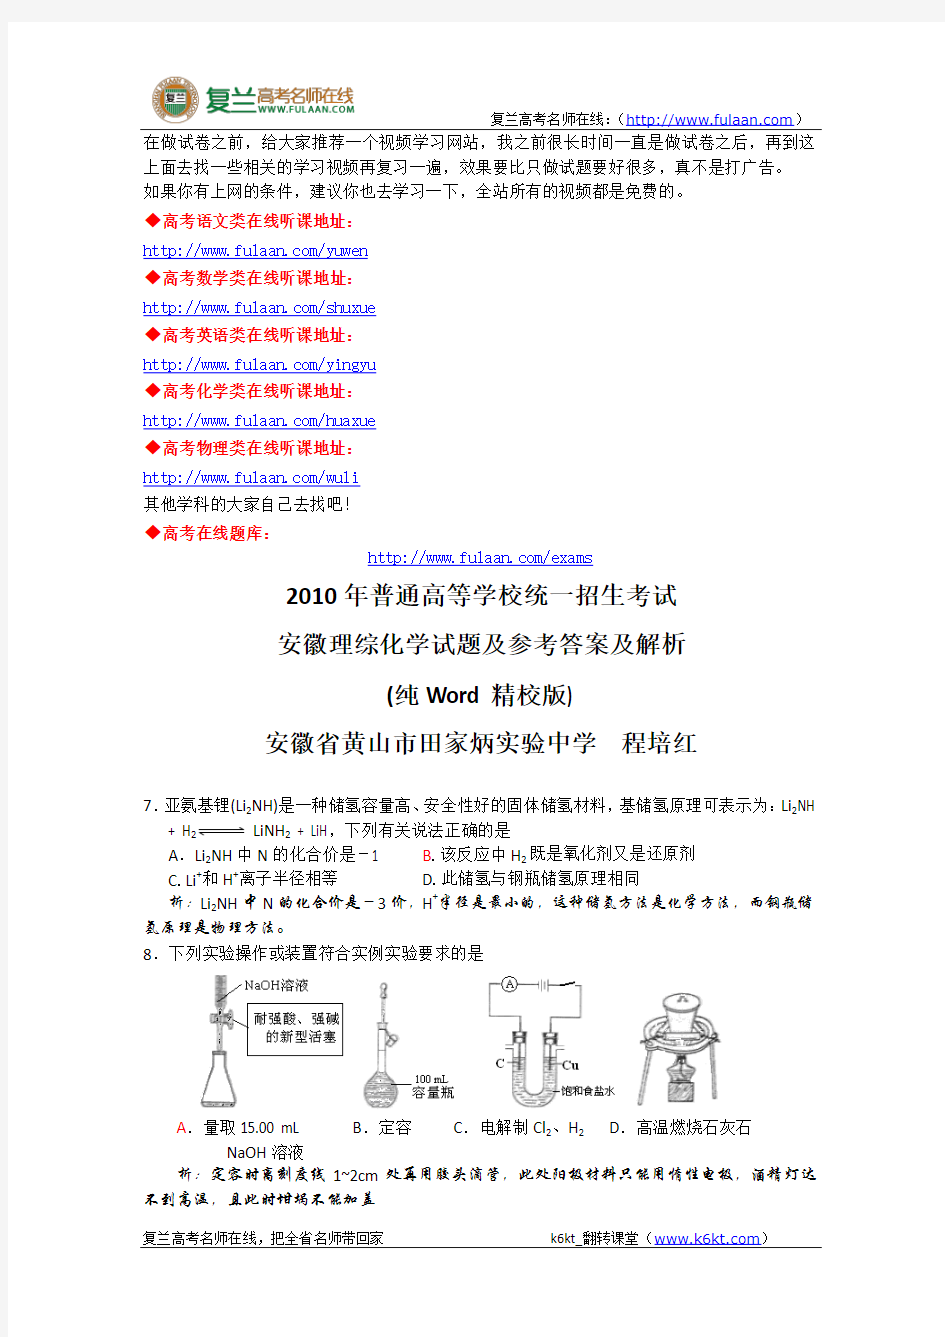 2010年高考试题——理综(安徽卷)-复兰高考名师在线精编解析版